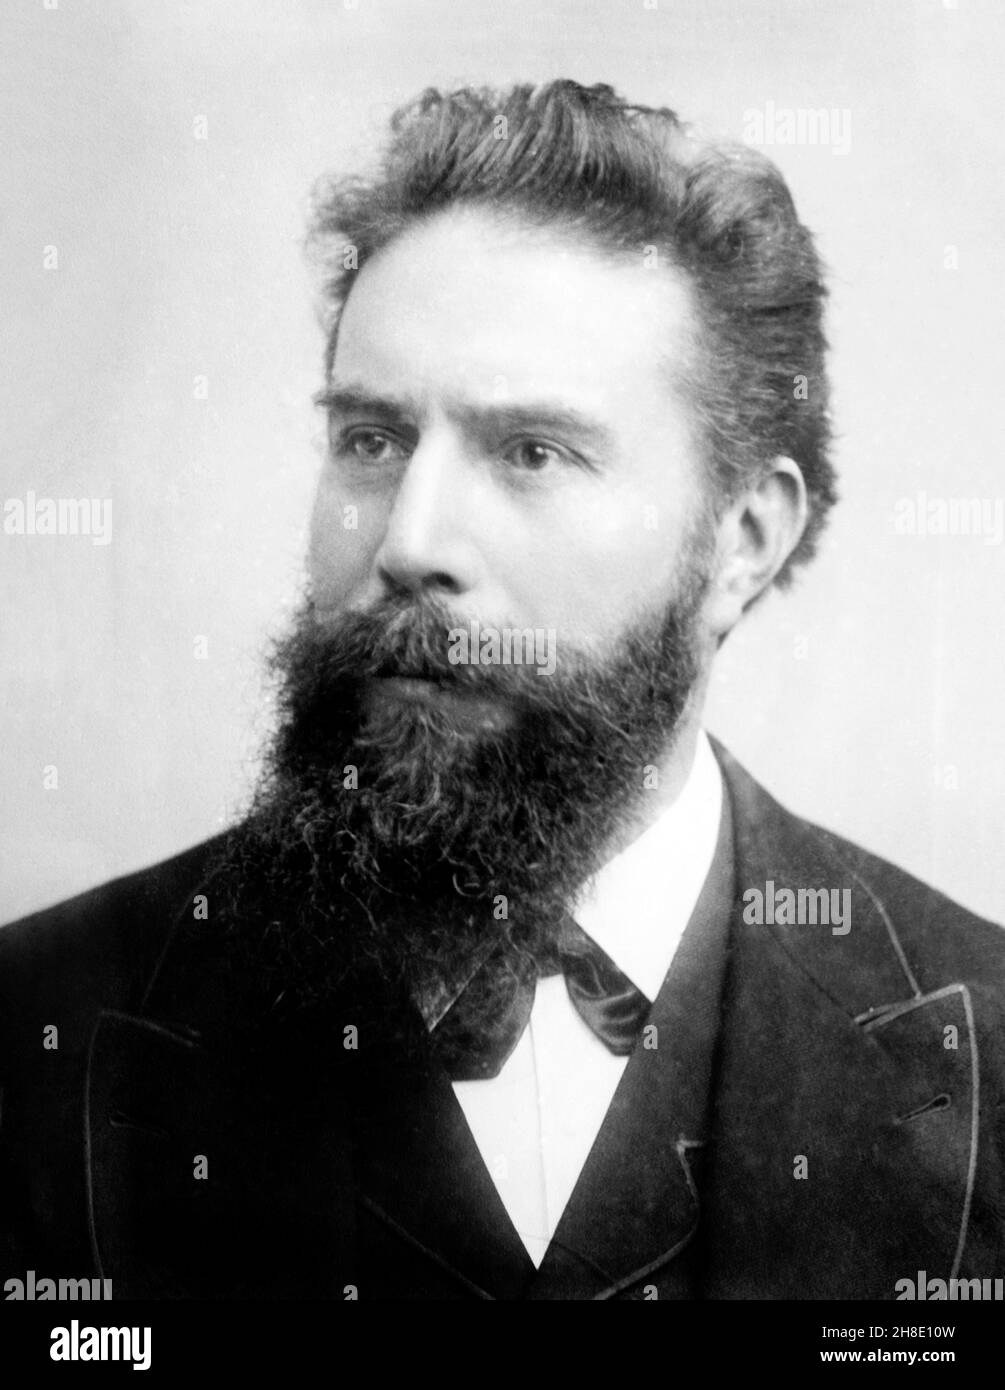 W.C.Röntgen.Portrait du physicien lauréat du prix Nobel Wilhelm Roentgen (1845-1923) Banque D'Images